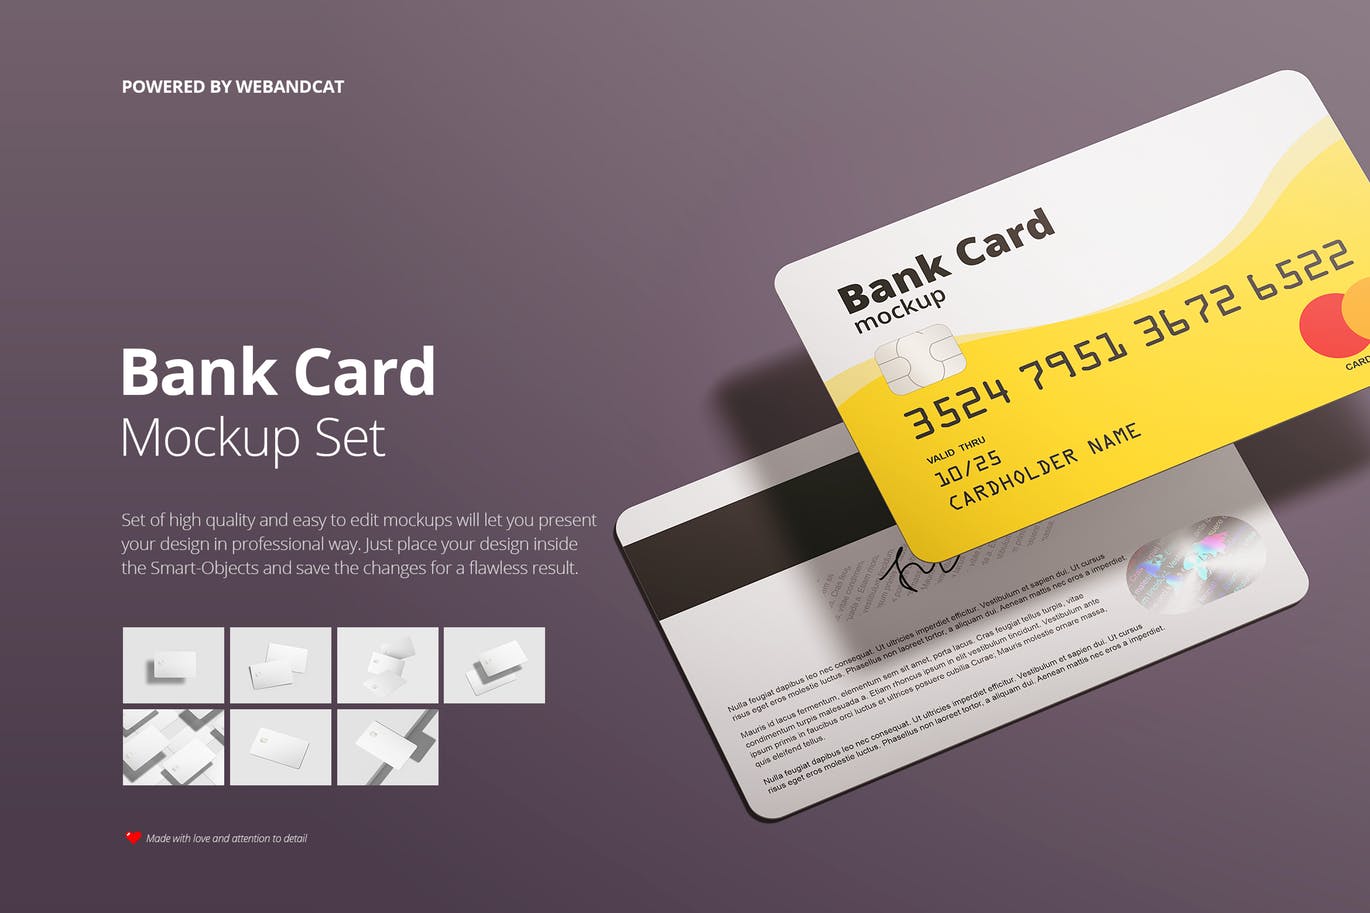 银行卡/会员卡版面设计效果图第一素材精选模板 Bank / Membership Card Mockup插图